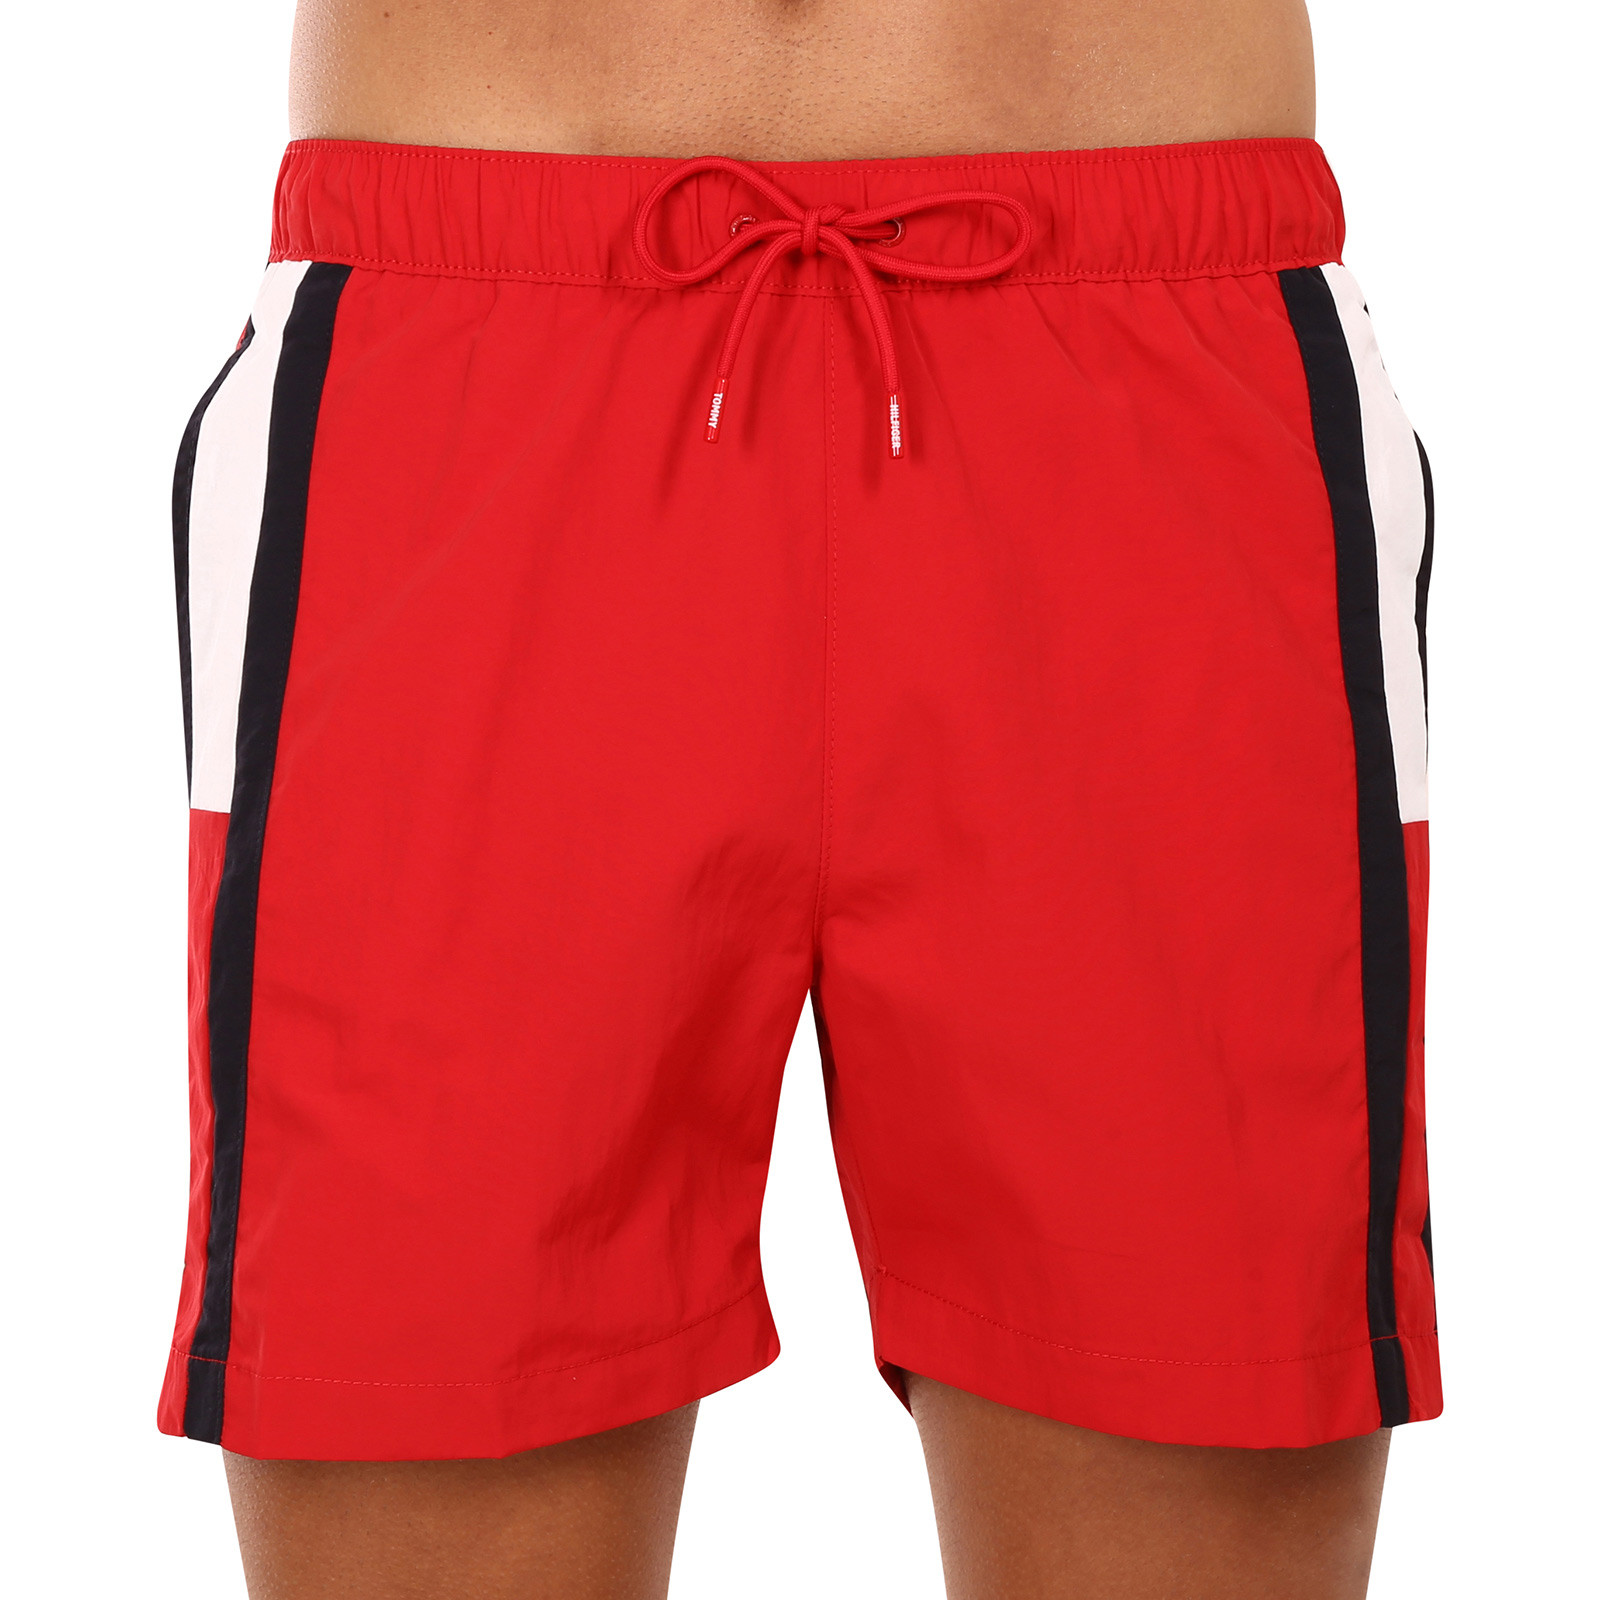 Men's swimwear Tommy Hilfiger red